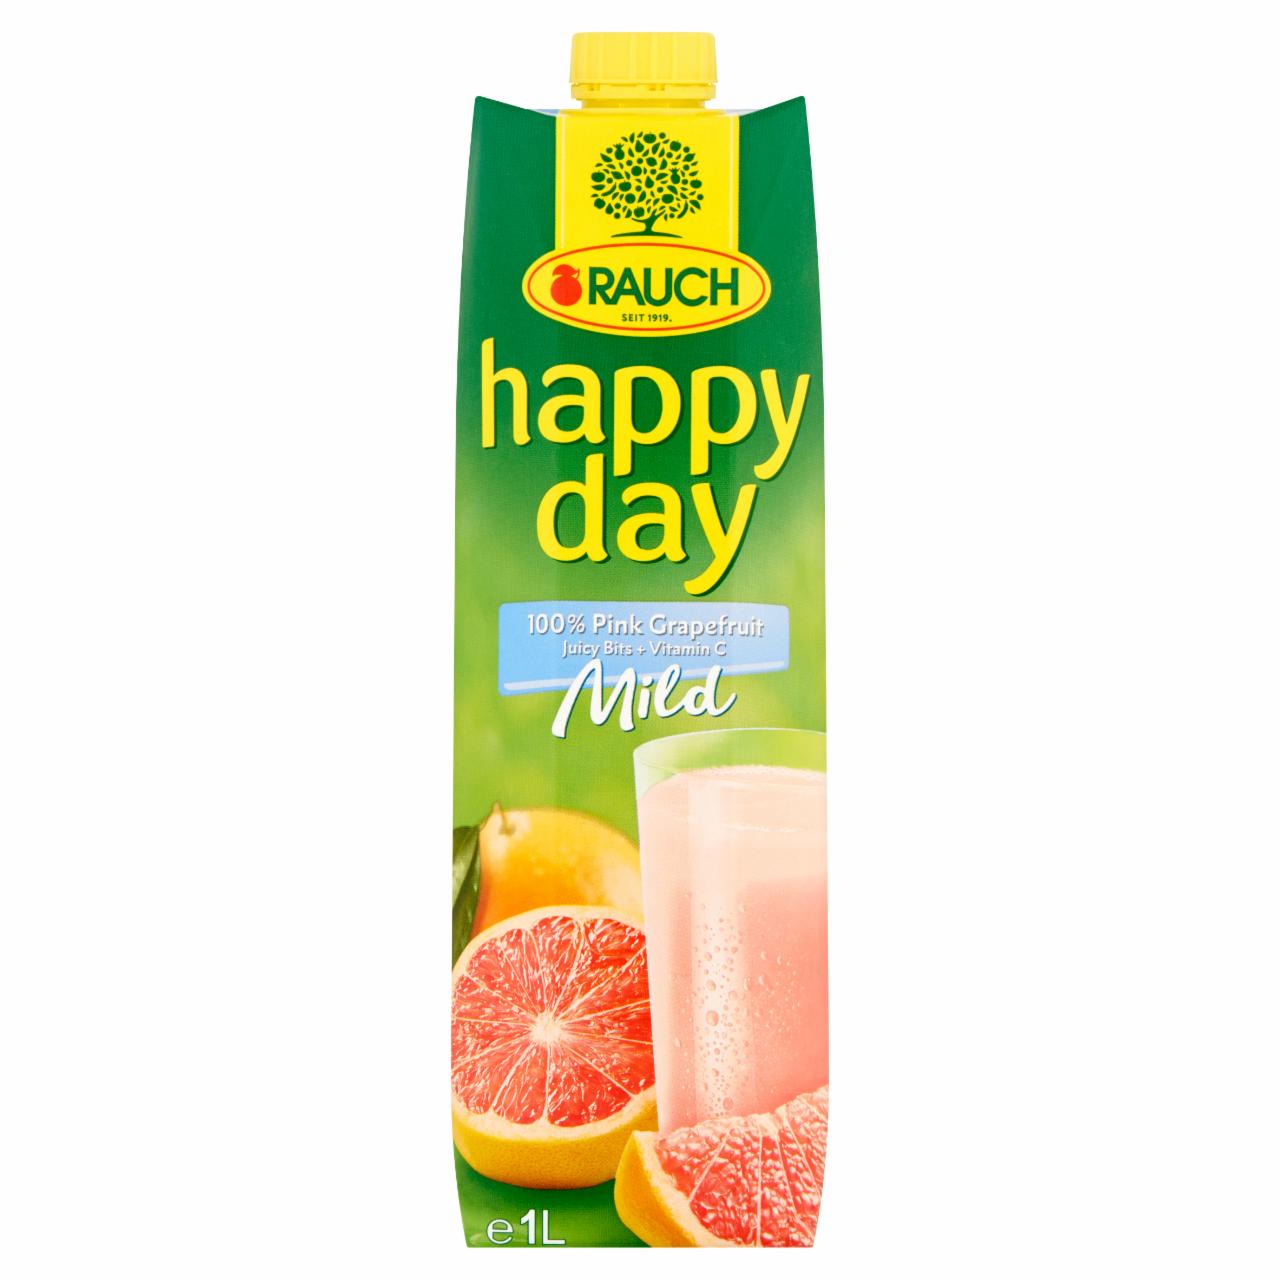 Képek - Rauch Happy Day Mild 100% pink grapefruitlé gyümölcshússal 1 l